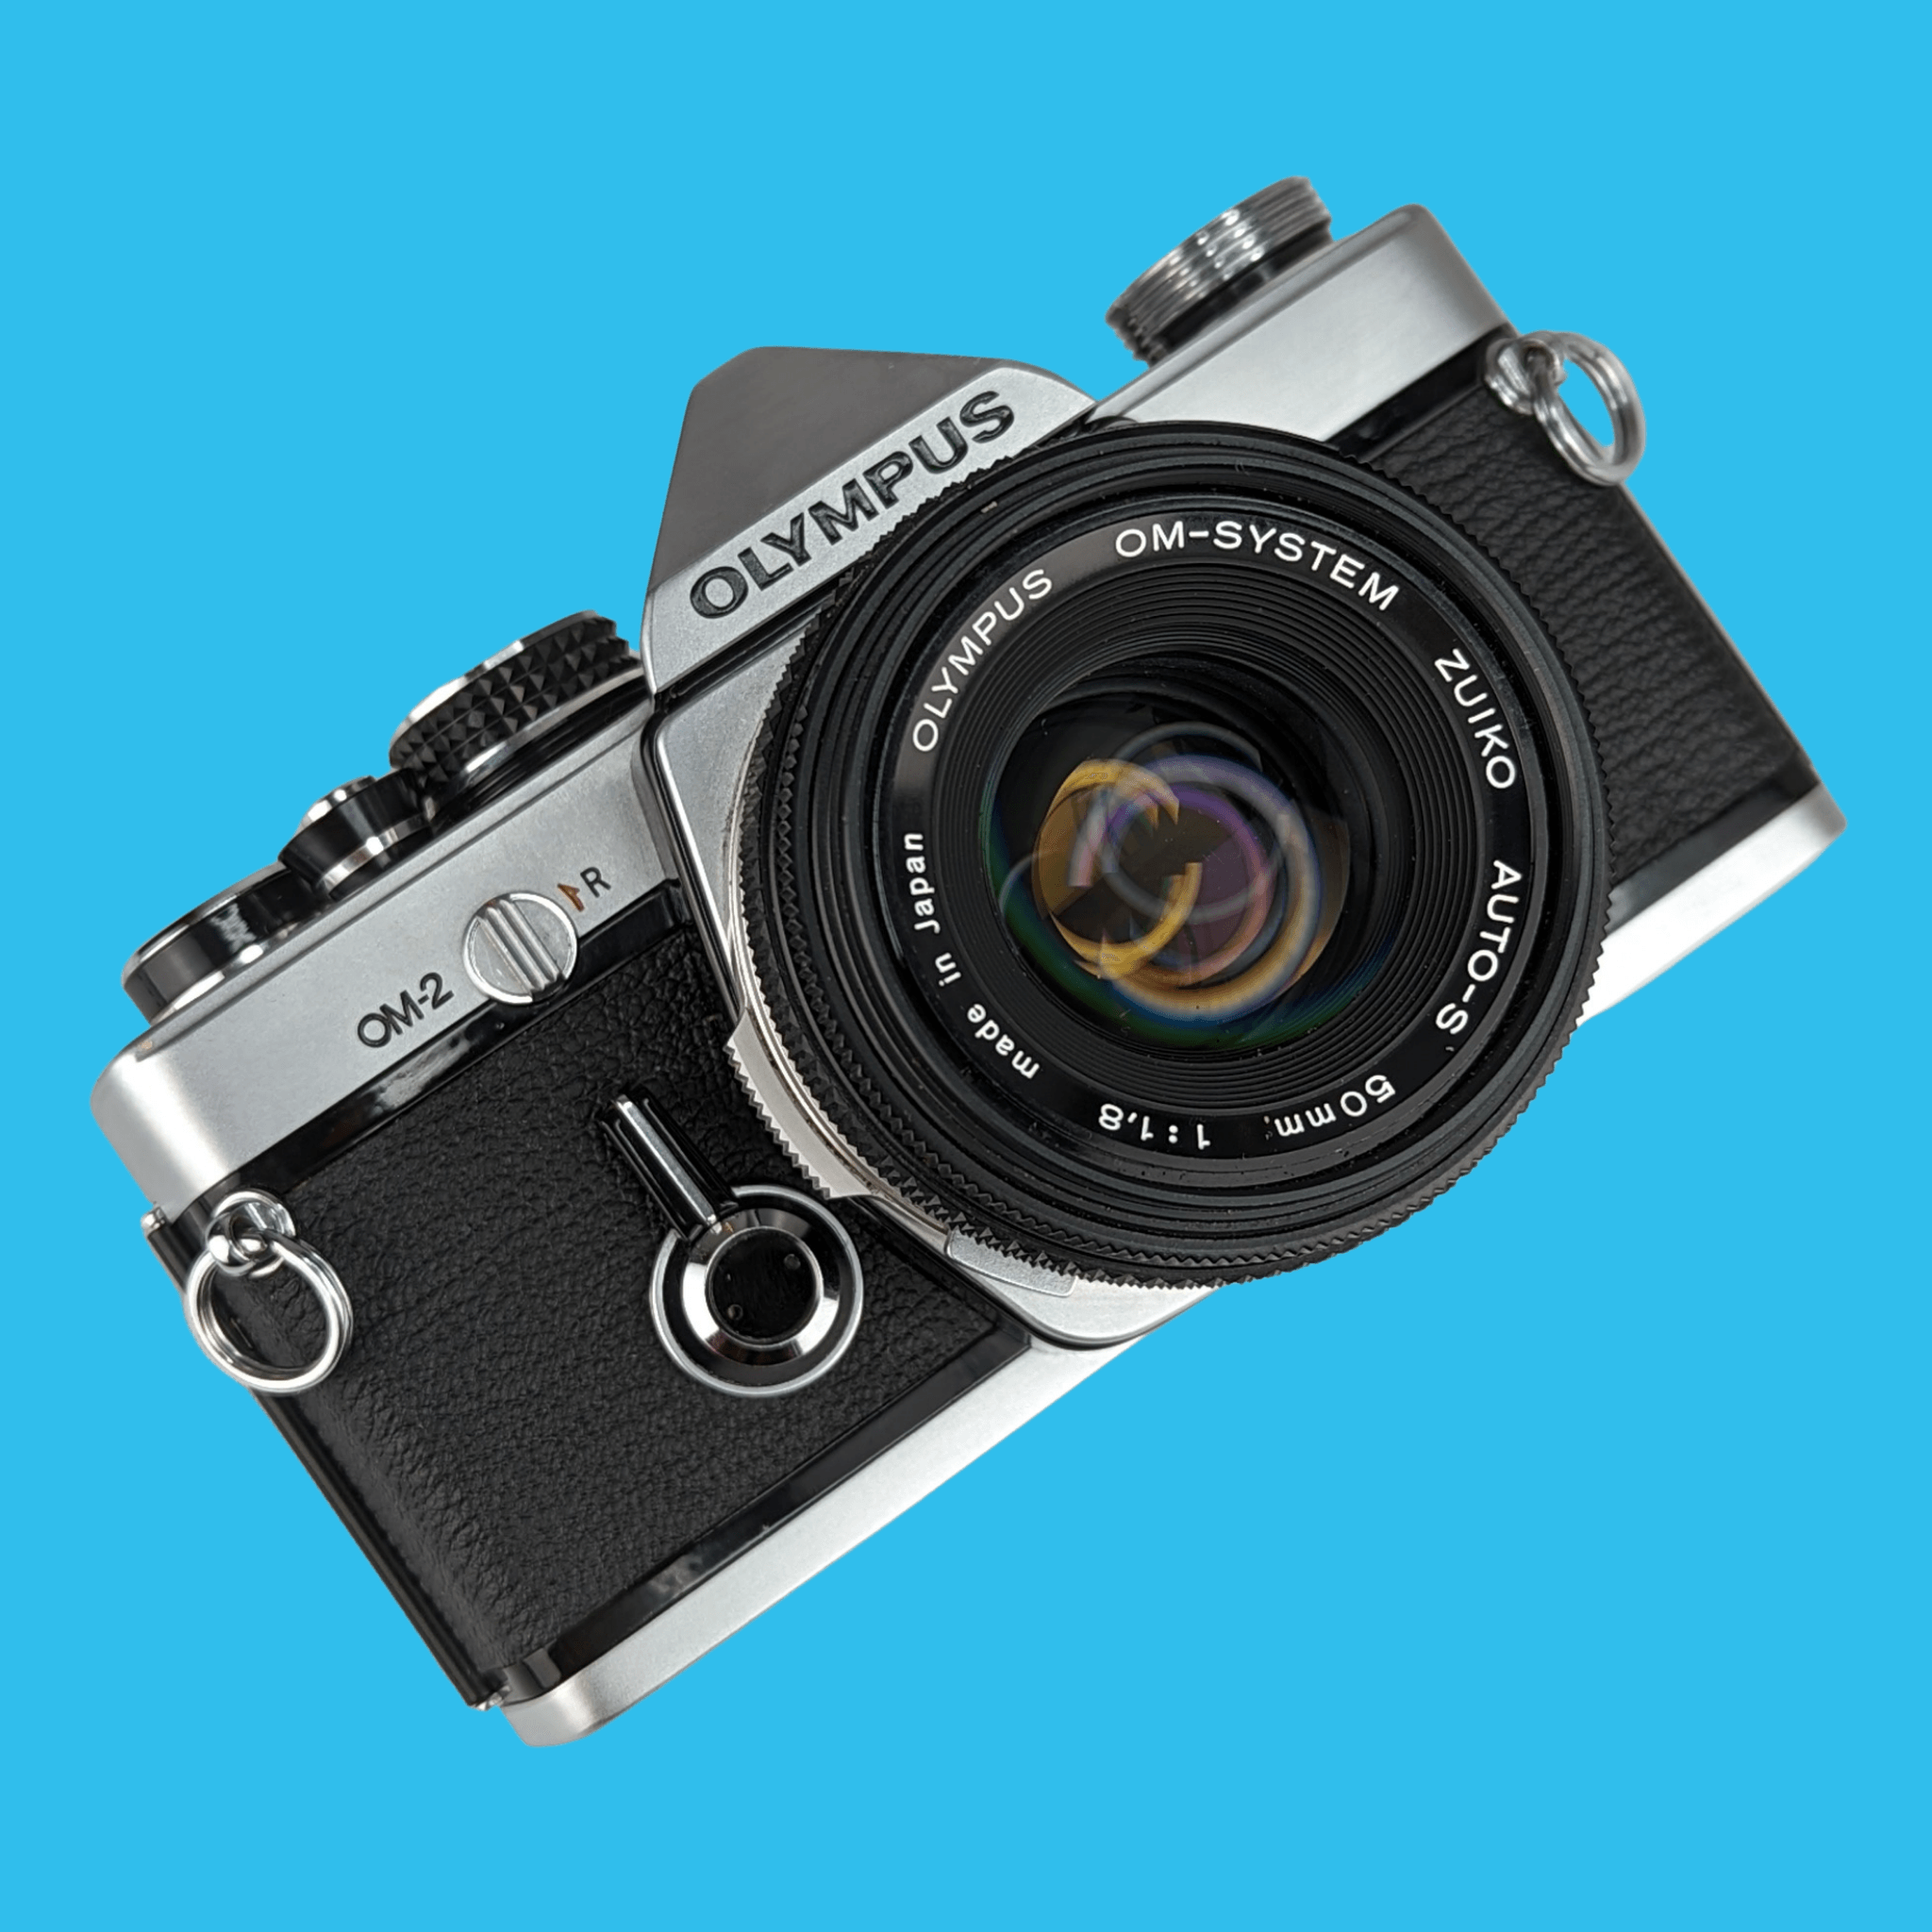 オリンパス OM2 ビンテージ 35mm 一眼レフ フィルム カメラ、f/1.8 50mm プライム レンズ付き – Film Camera Store